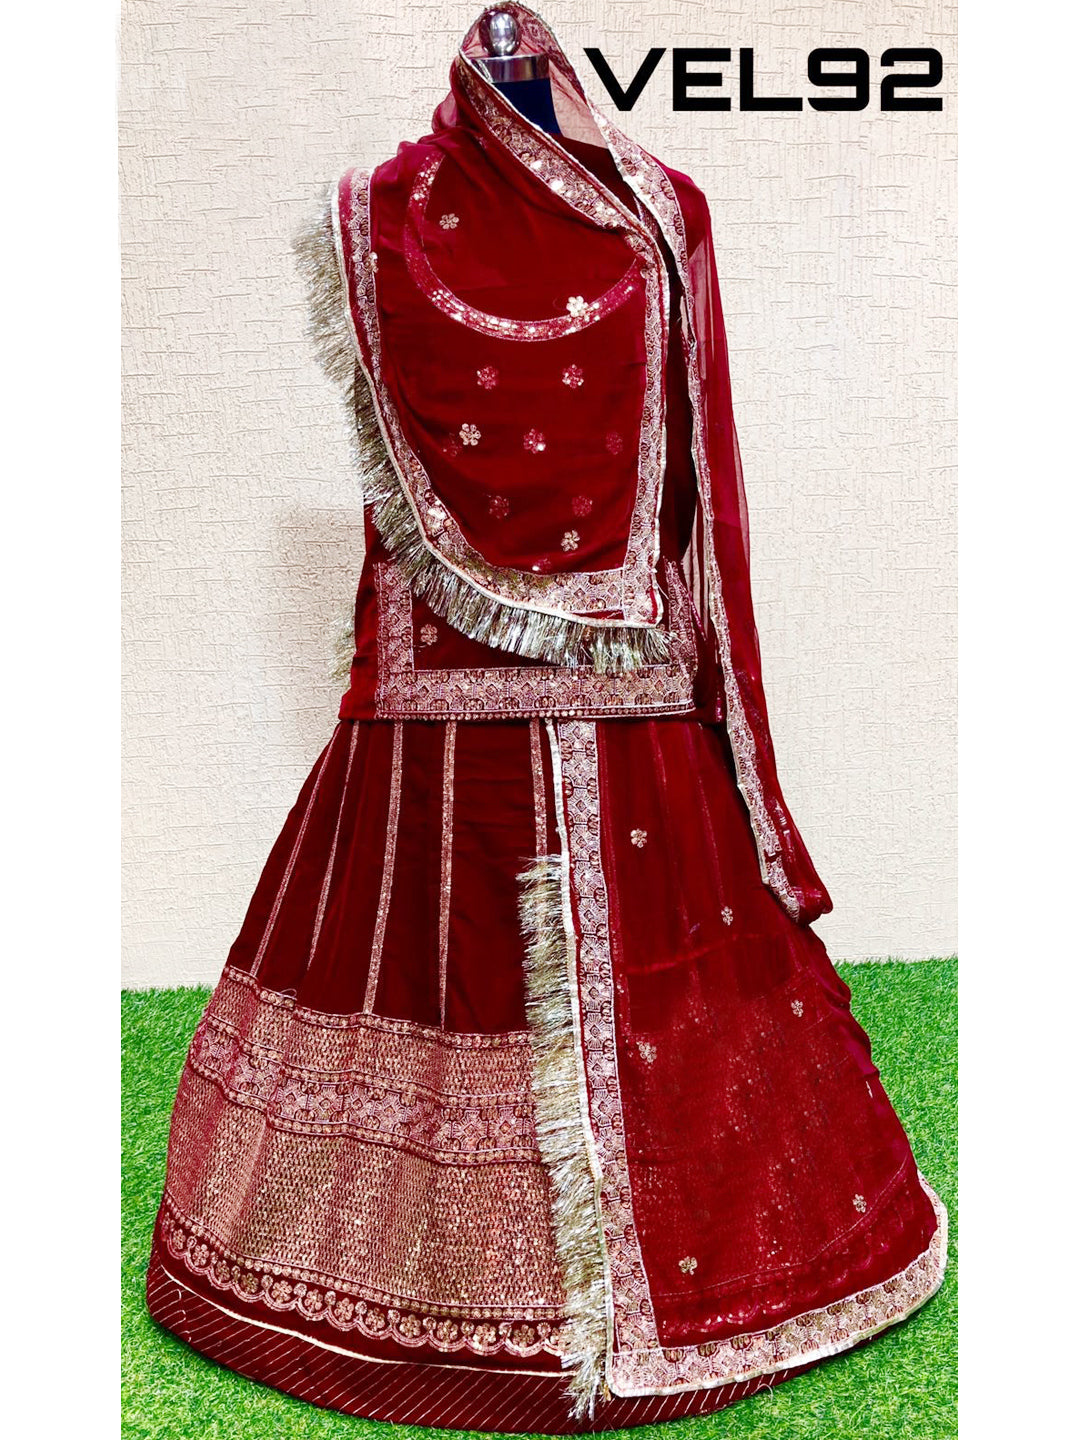 YUVTI अनस्टिच्ड राजपूती पोशक गोटा पट्टी कुंदन राजपूती ड्रेस महिलाओं के लिए  (ग्रे), ग्रे(स्लेटी) : Amazon.in: कपड़े और एक्सेसरीज़